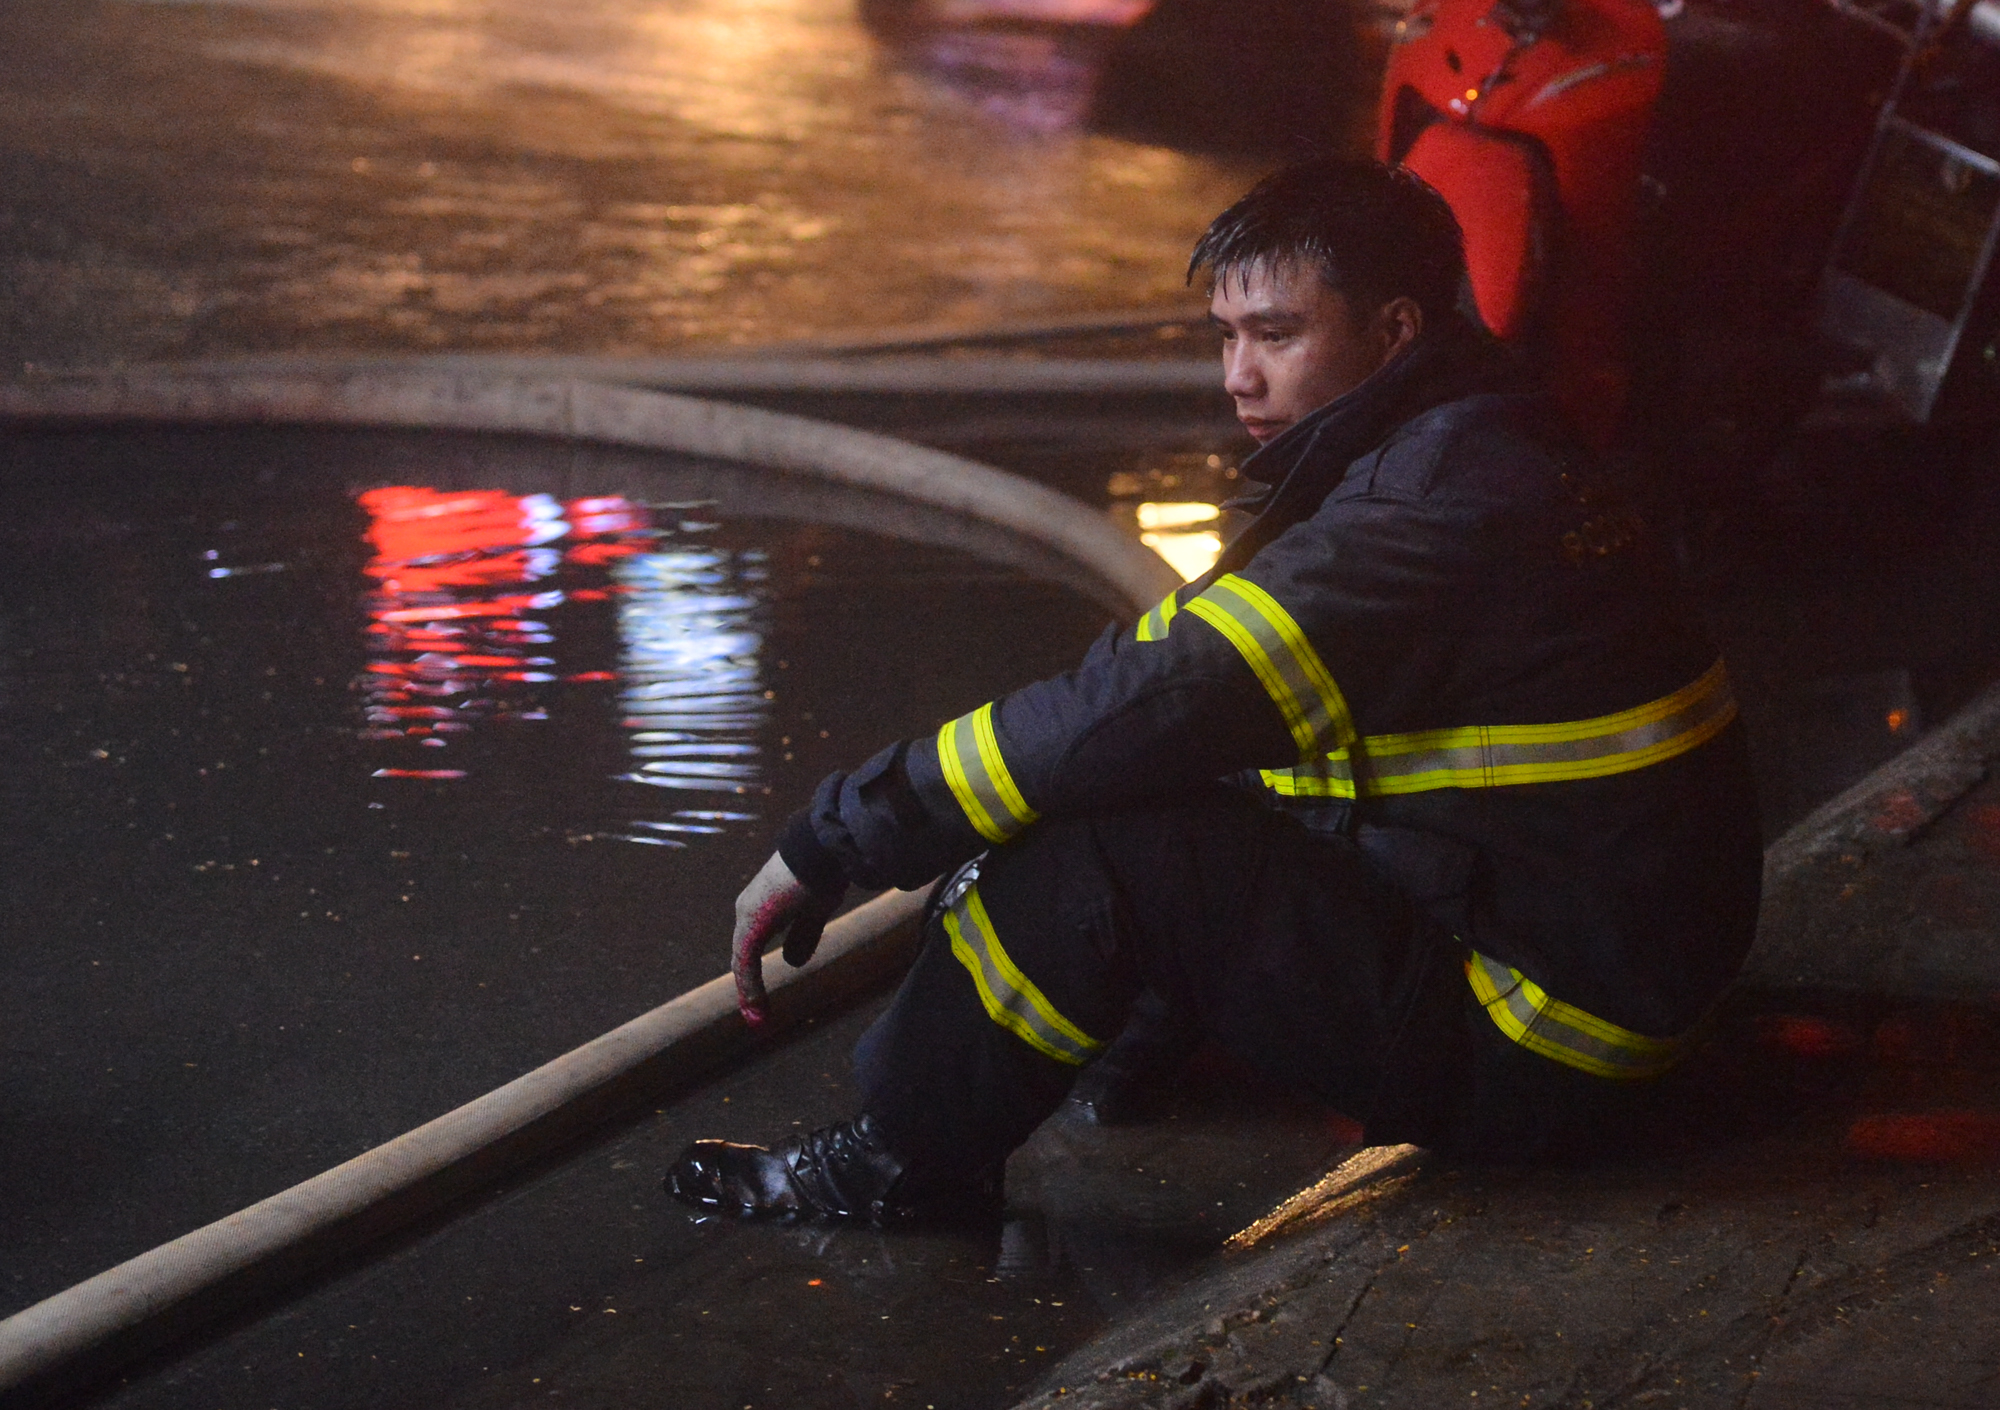 Ảnh, clip: Hiện trường vụ cháy 3 kiot ở Hà Nội trong đêm, nhiều người thoát nạn - Ảnh 13.